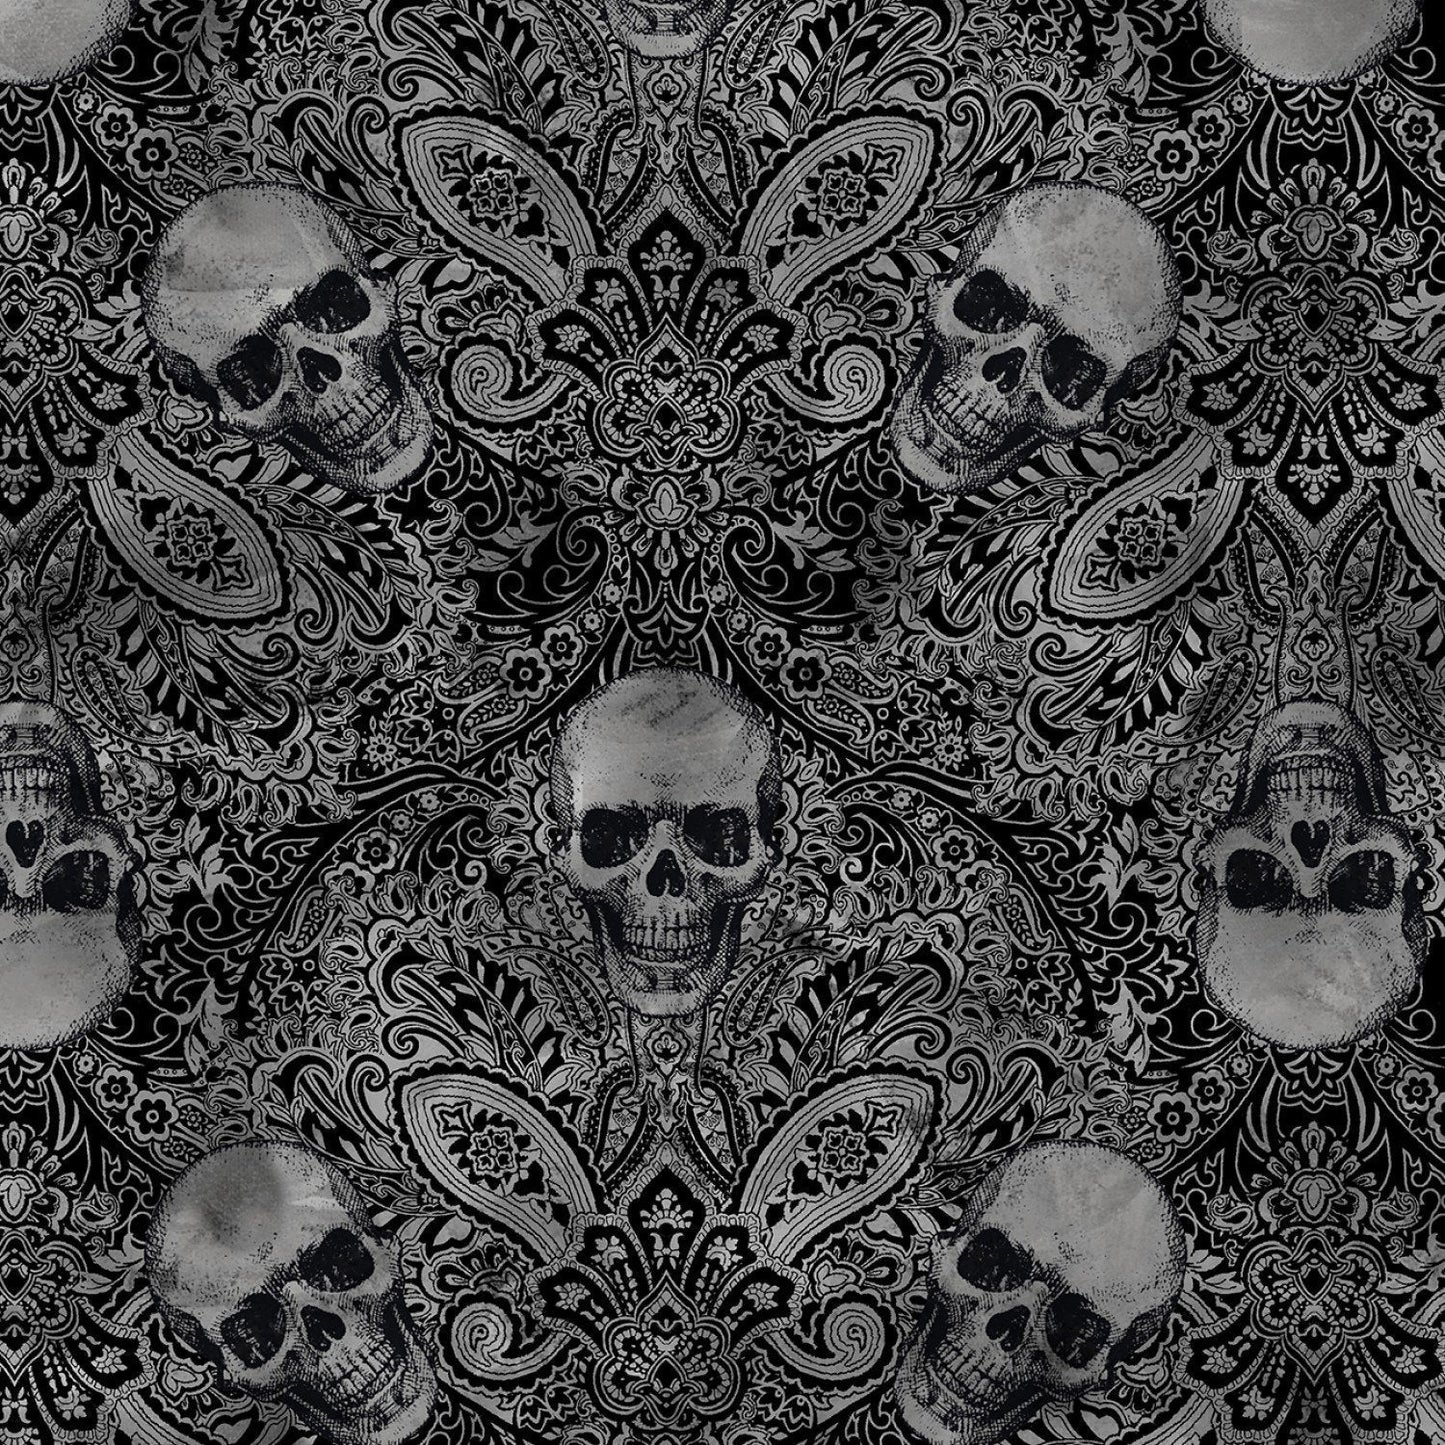 Wicked Skull fabric C7887 Skull bandana fabric damask